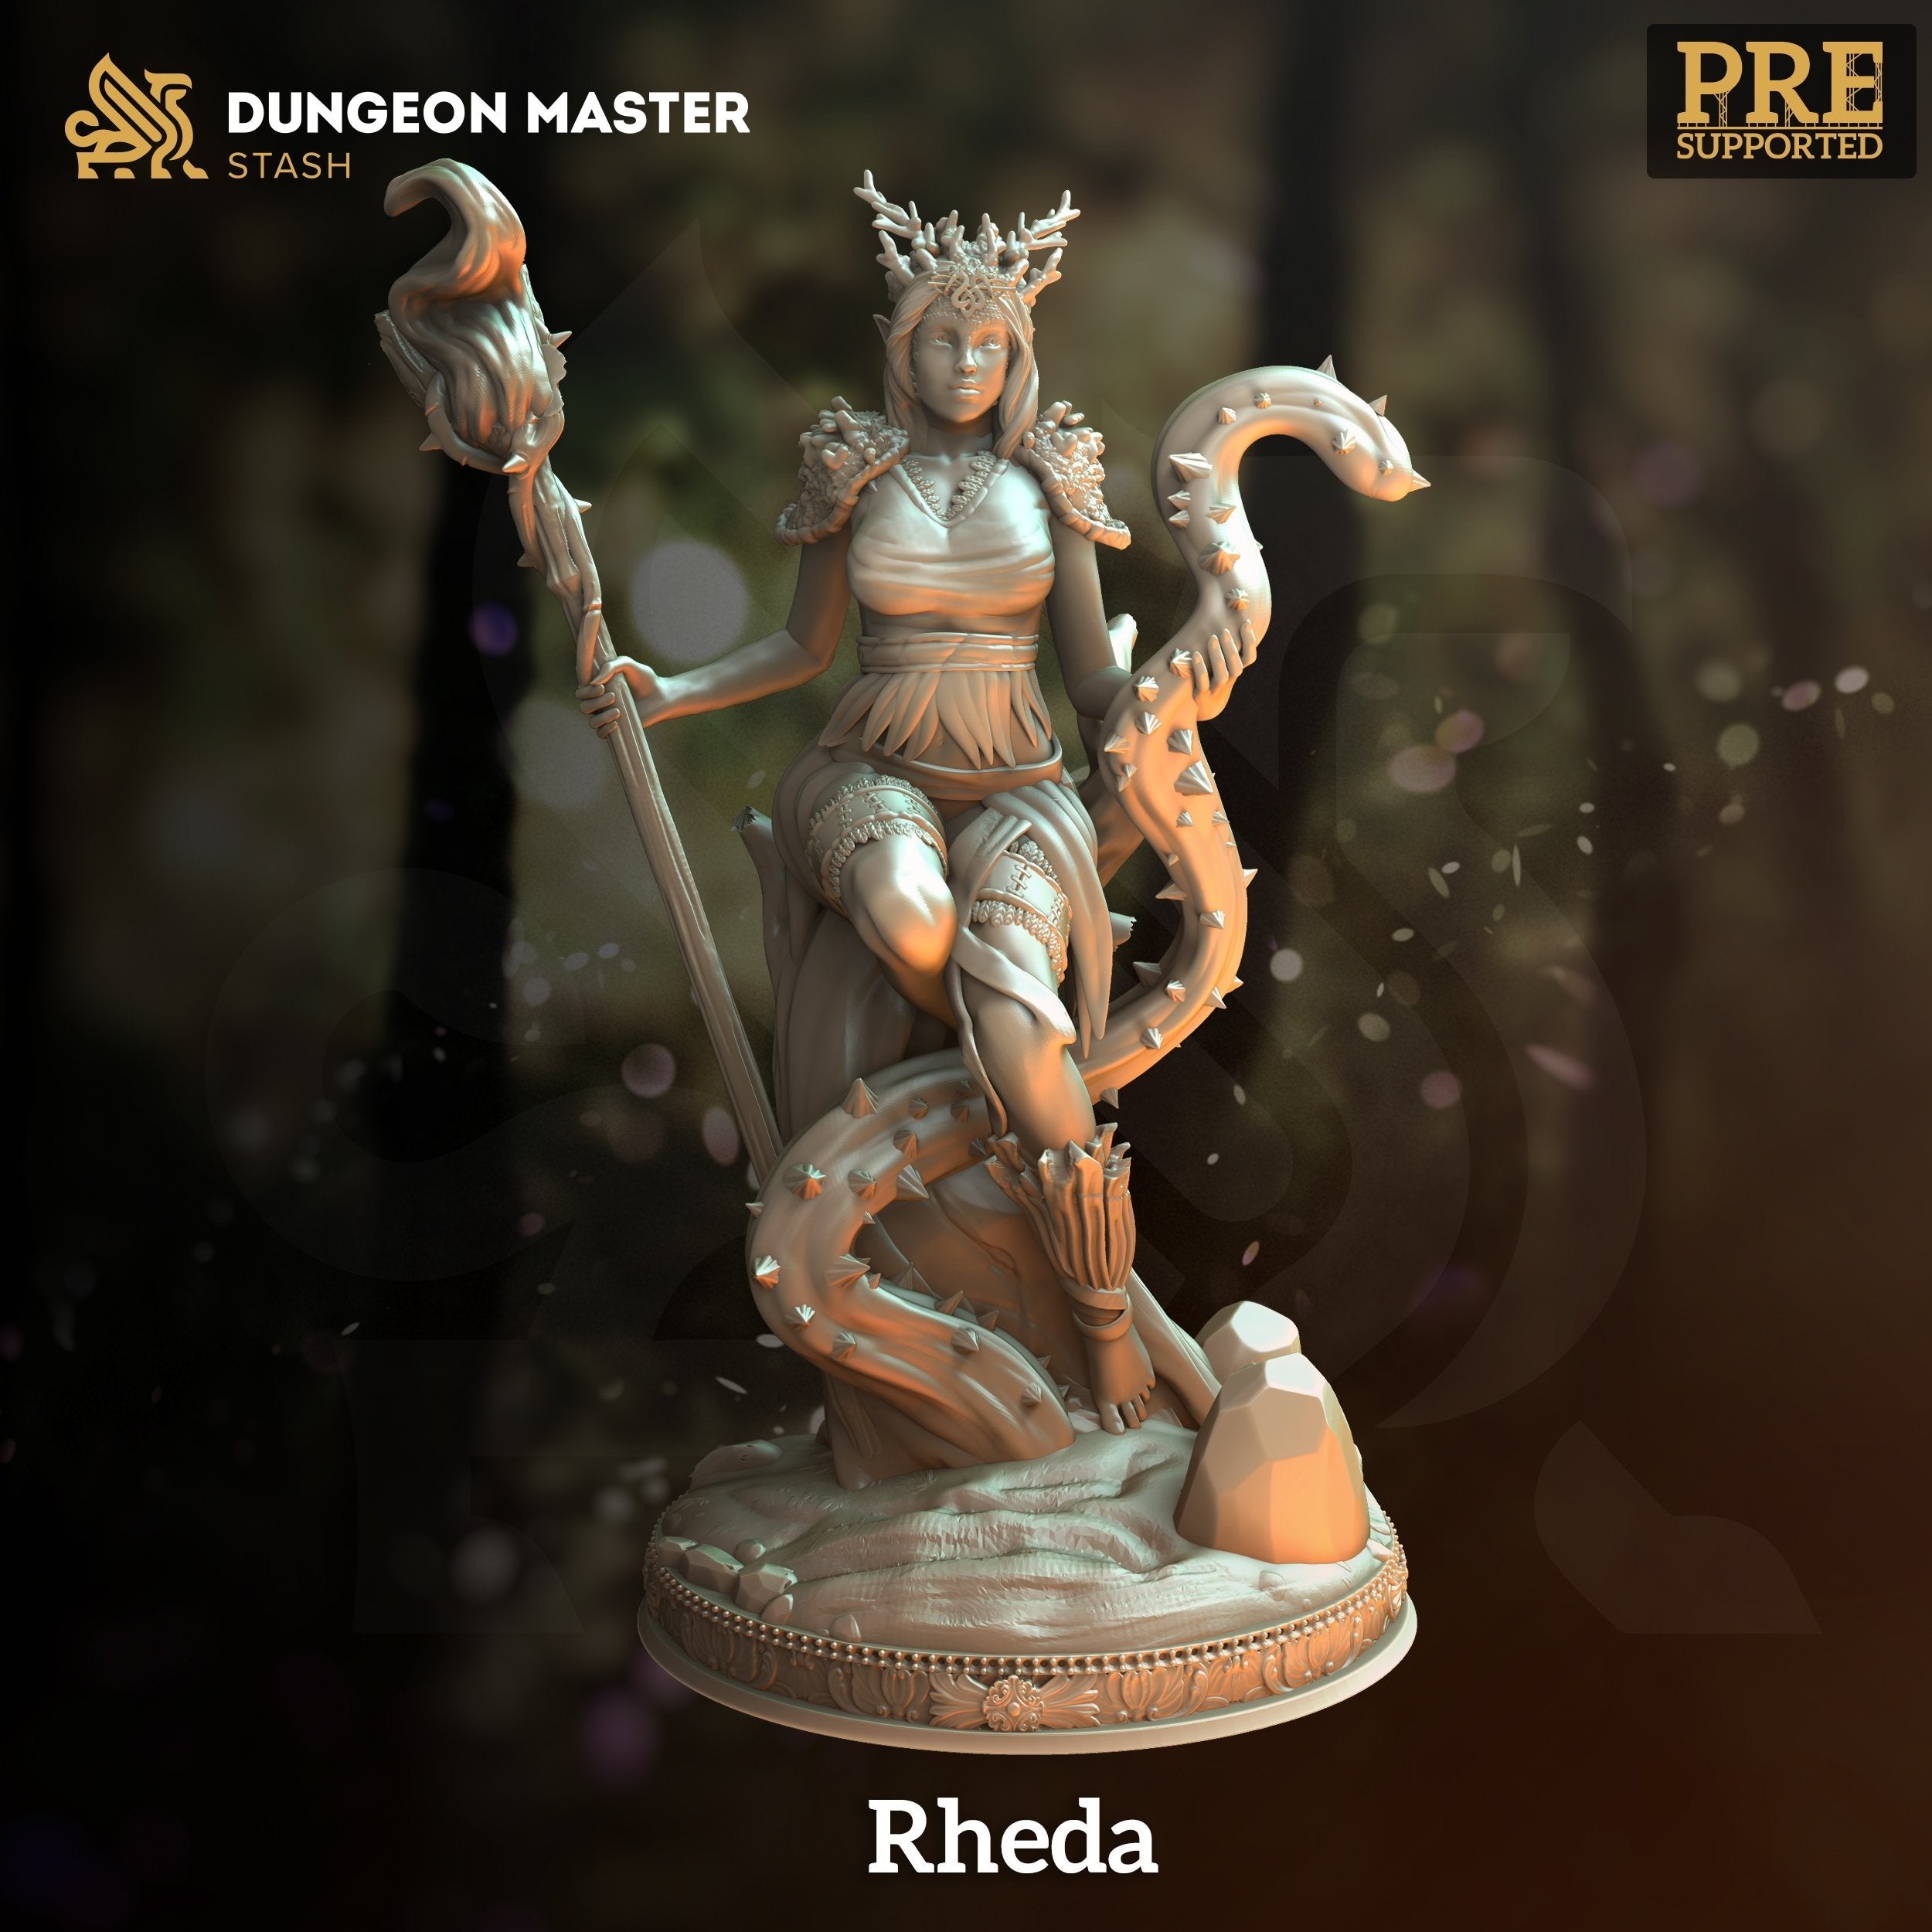 Rheda - The Printable Dragon